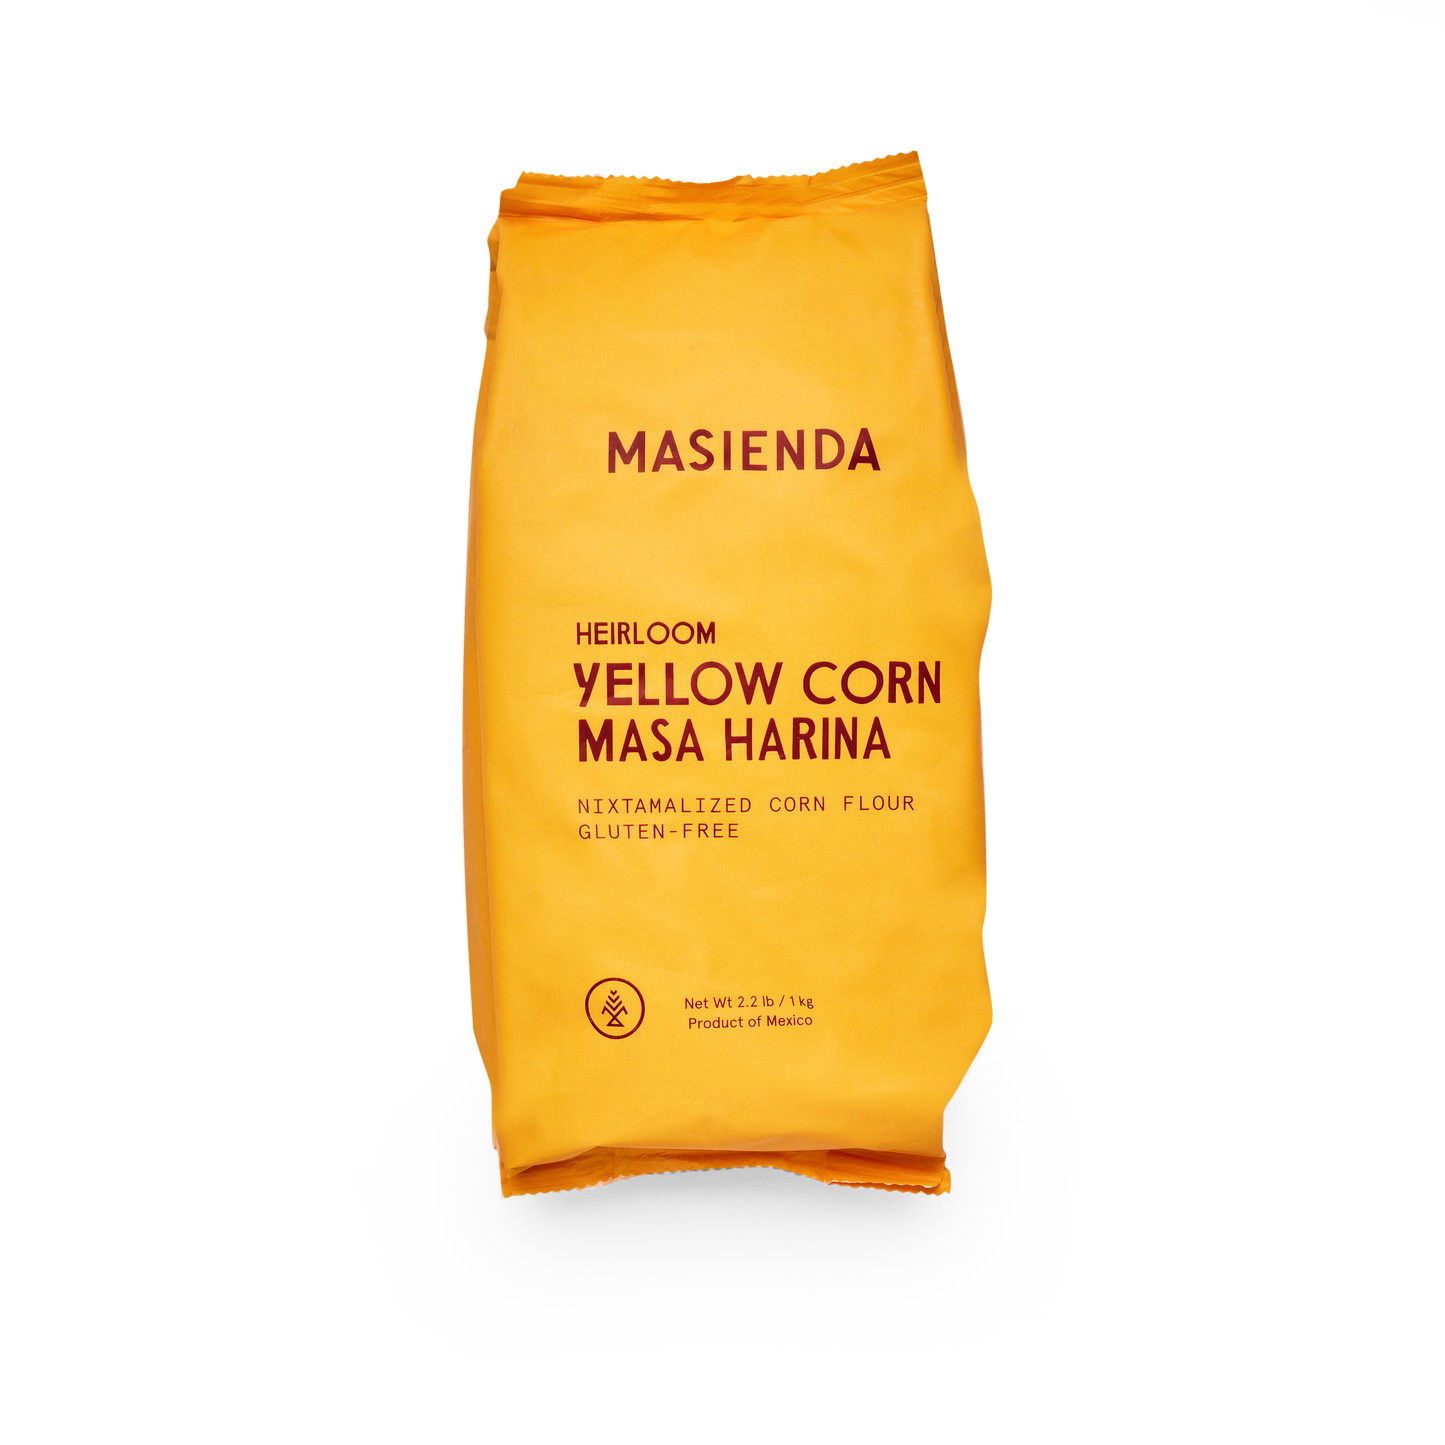 Heirloom Yellow Corn Masa Harina